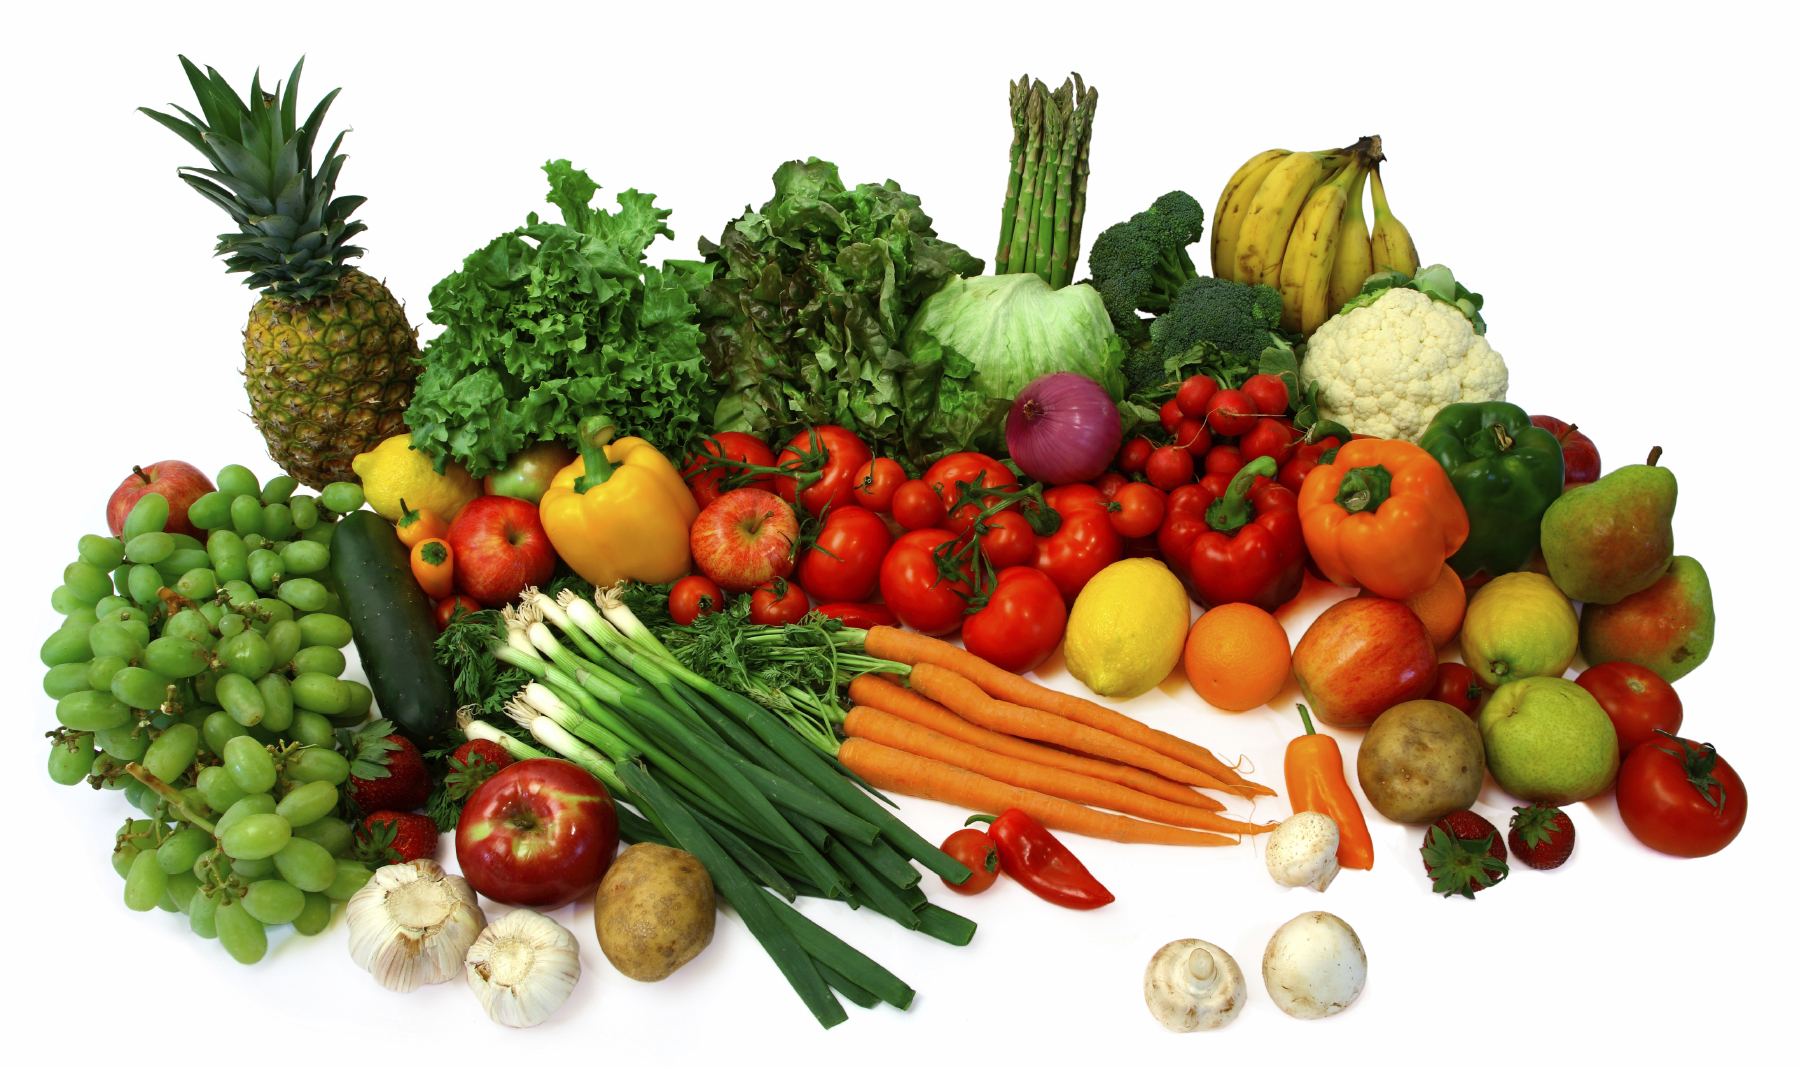 قیمت انواع سبزیجات برگی، غیر برگی،بسته بندی و دستچین + جدول